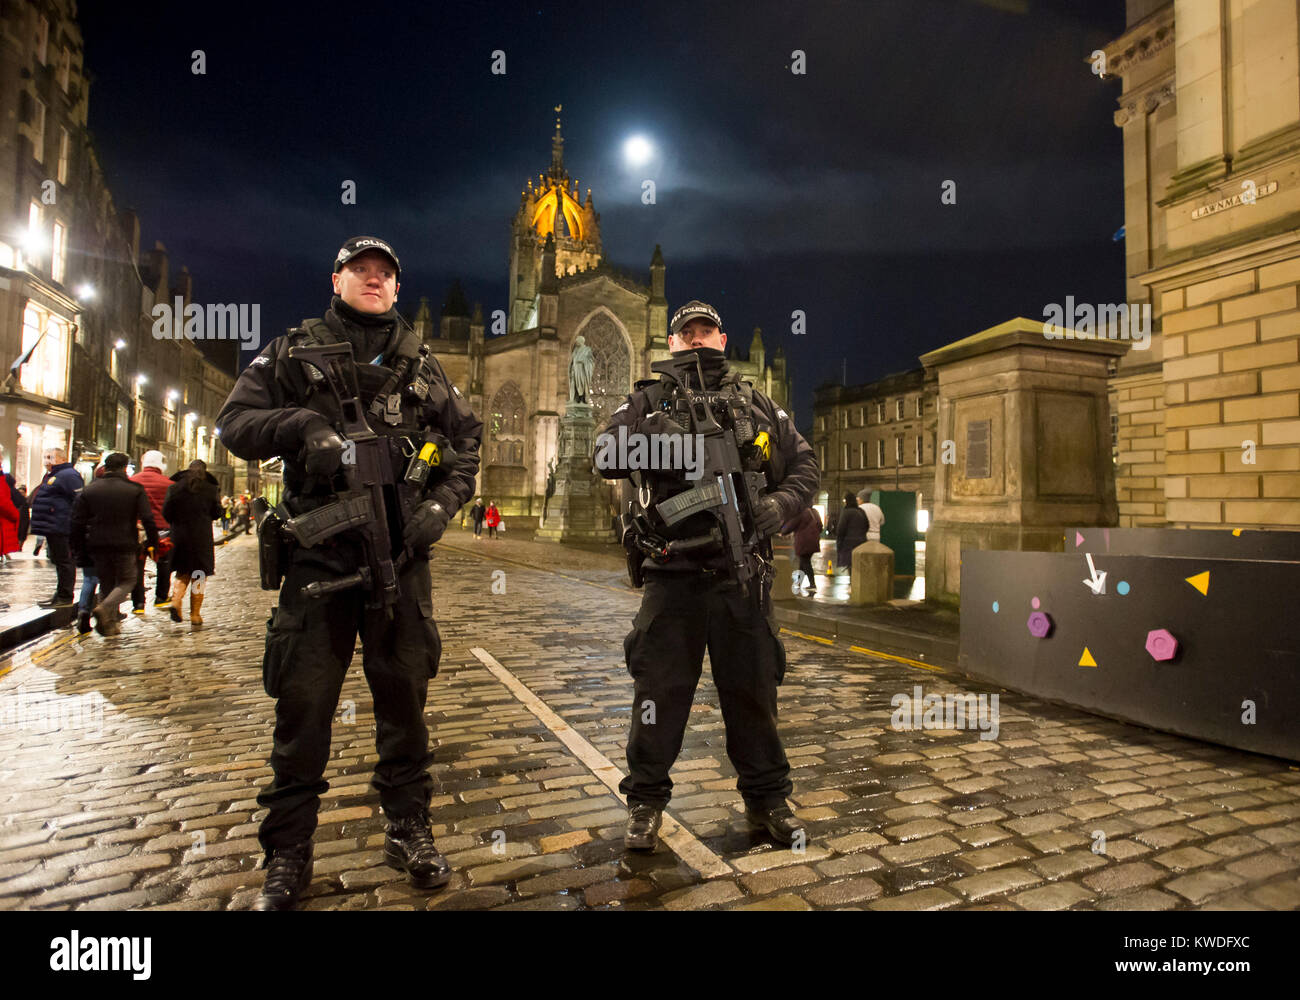 Bewaffnete Polizisten auf Streife auf der Royal Mile in Edinburgh während des neuen Jahres Feiern. Stockfoto